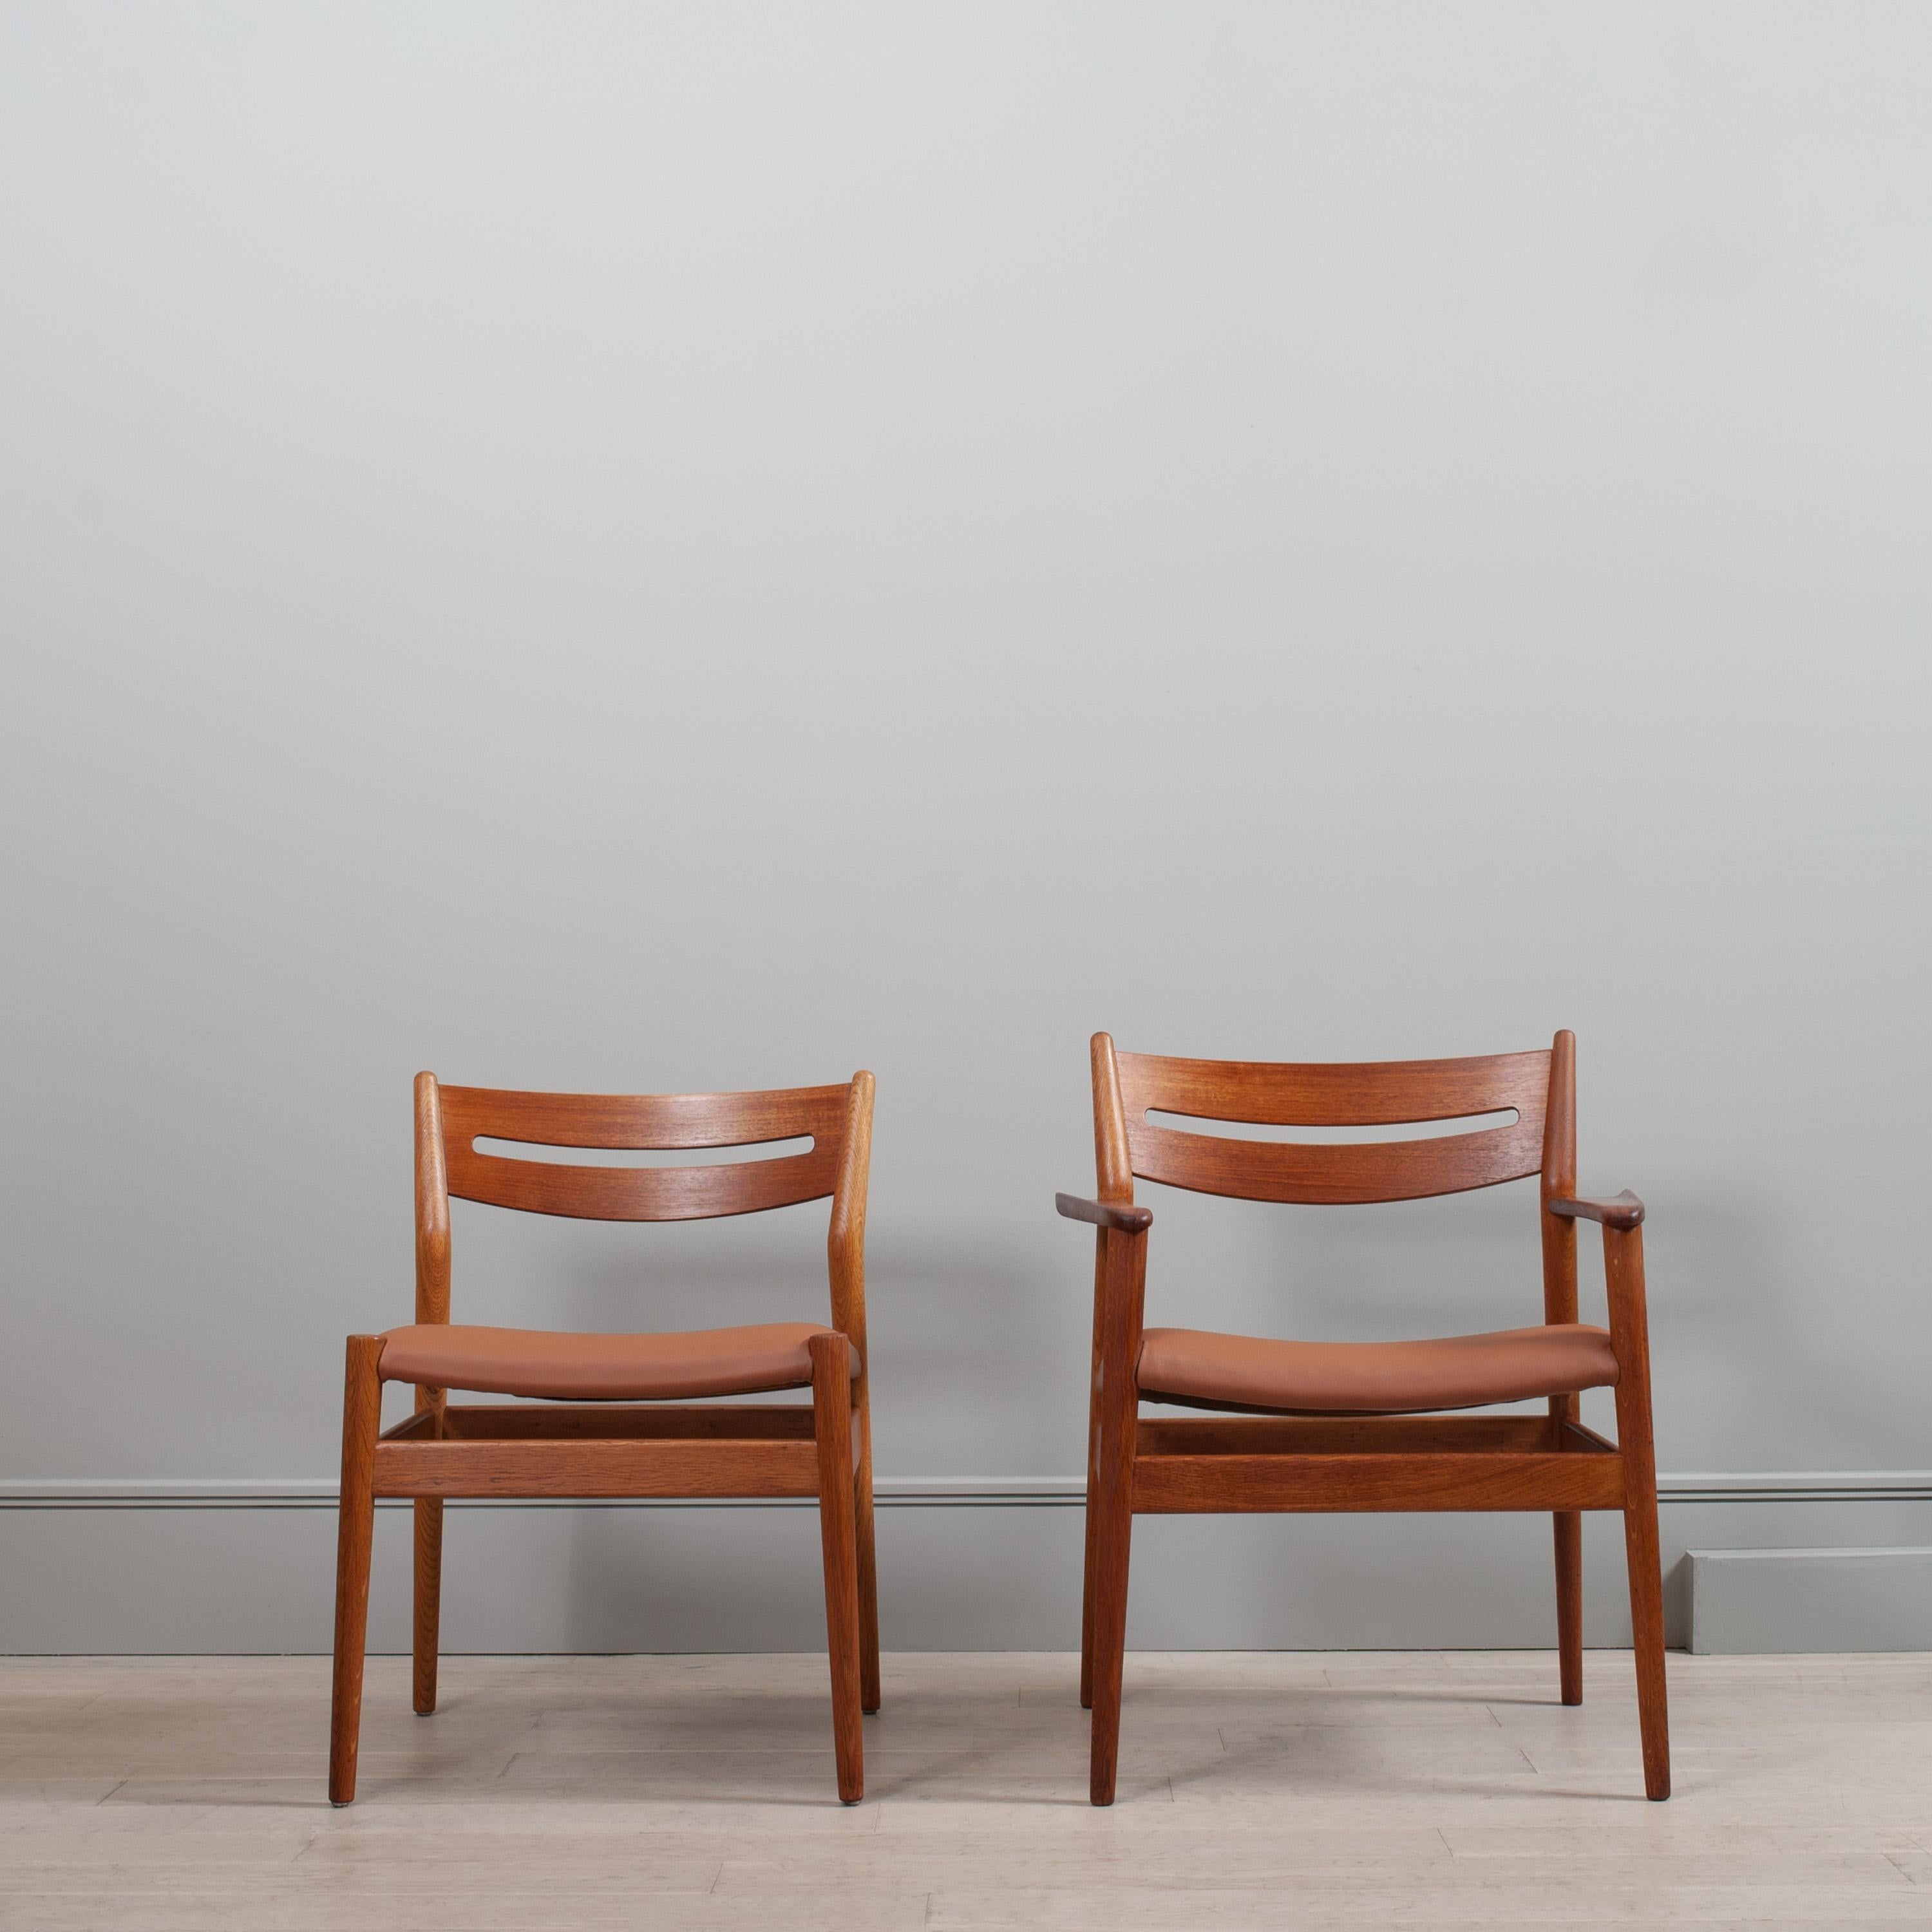 Un ensemble incroyablement rare de 8 chaises de salle à manger de Grete Jalk. 
Modèle 32-42 conçu par Grete Jalk en 1962 et produit par le fabricant de meubles d'art Sibast. Ce remarquable ensemble de chaises modernistes scandinaves comprend 6